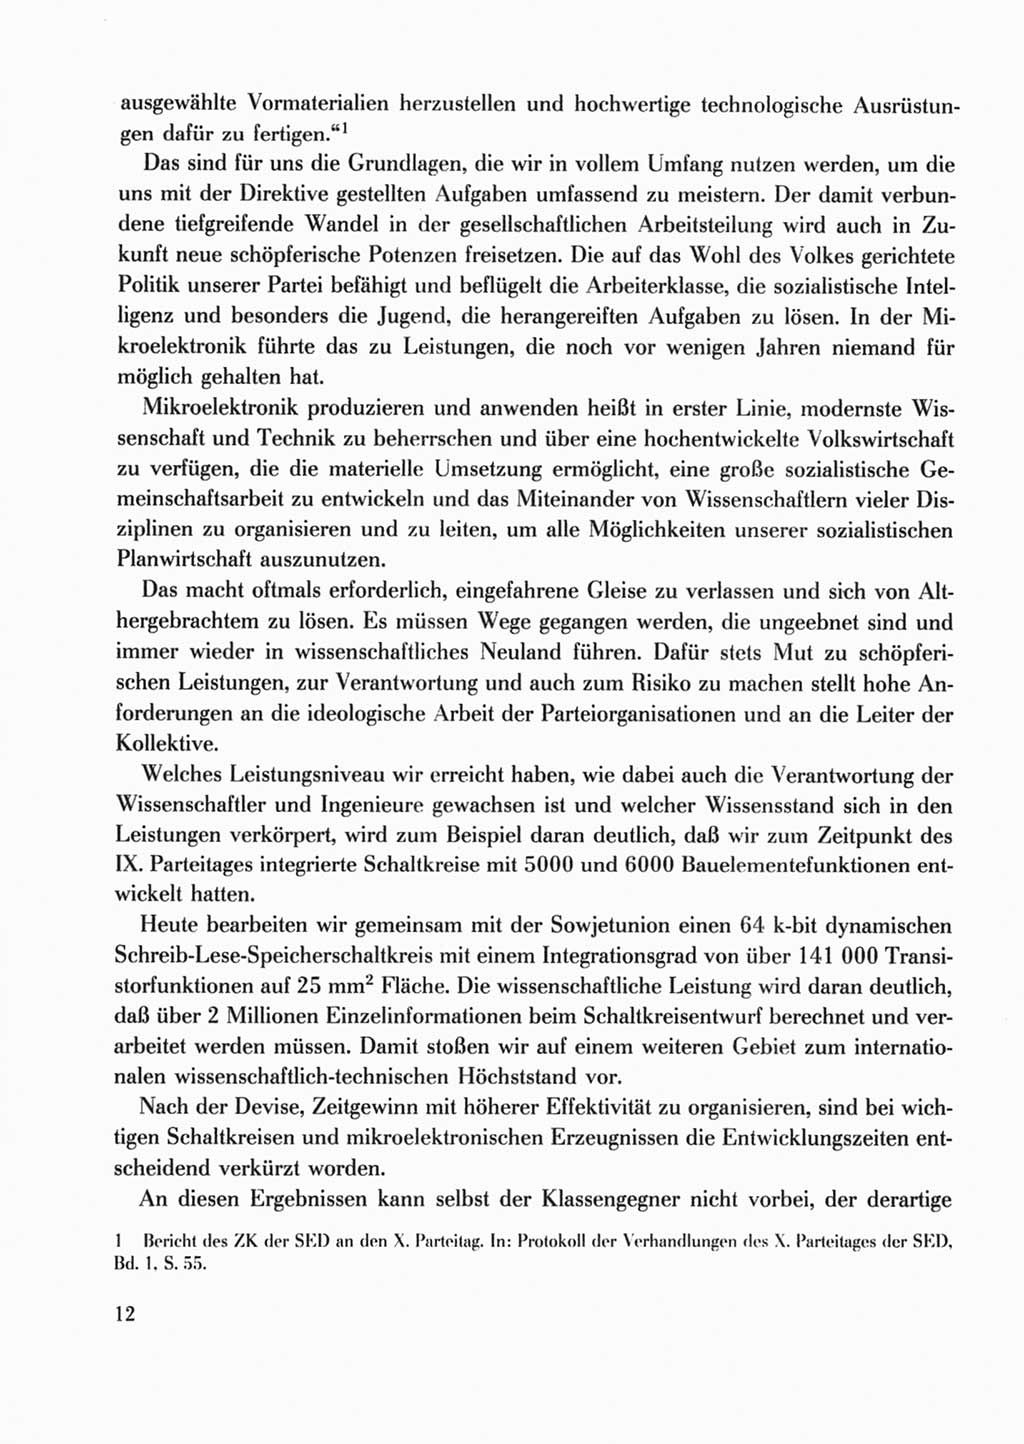 Protokoll der Verhandlungen des Ⅹ. Parteitages der Sozialistischen Einheitspartei Deutschlands (SED) [Deutsche Demokratische Republik (DDR)] 1981, Band 2, Seite 12 (Prot. Verh. Ⅹ. PT SED DDR 1981, Bd. 2, S. 12)